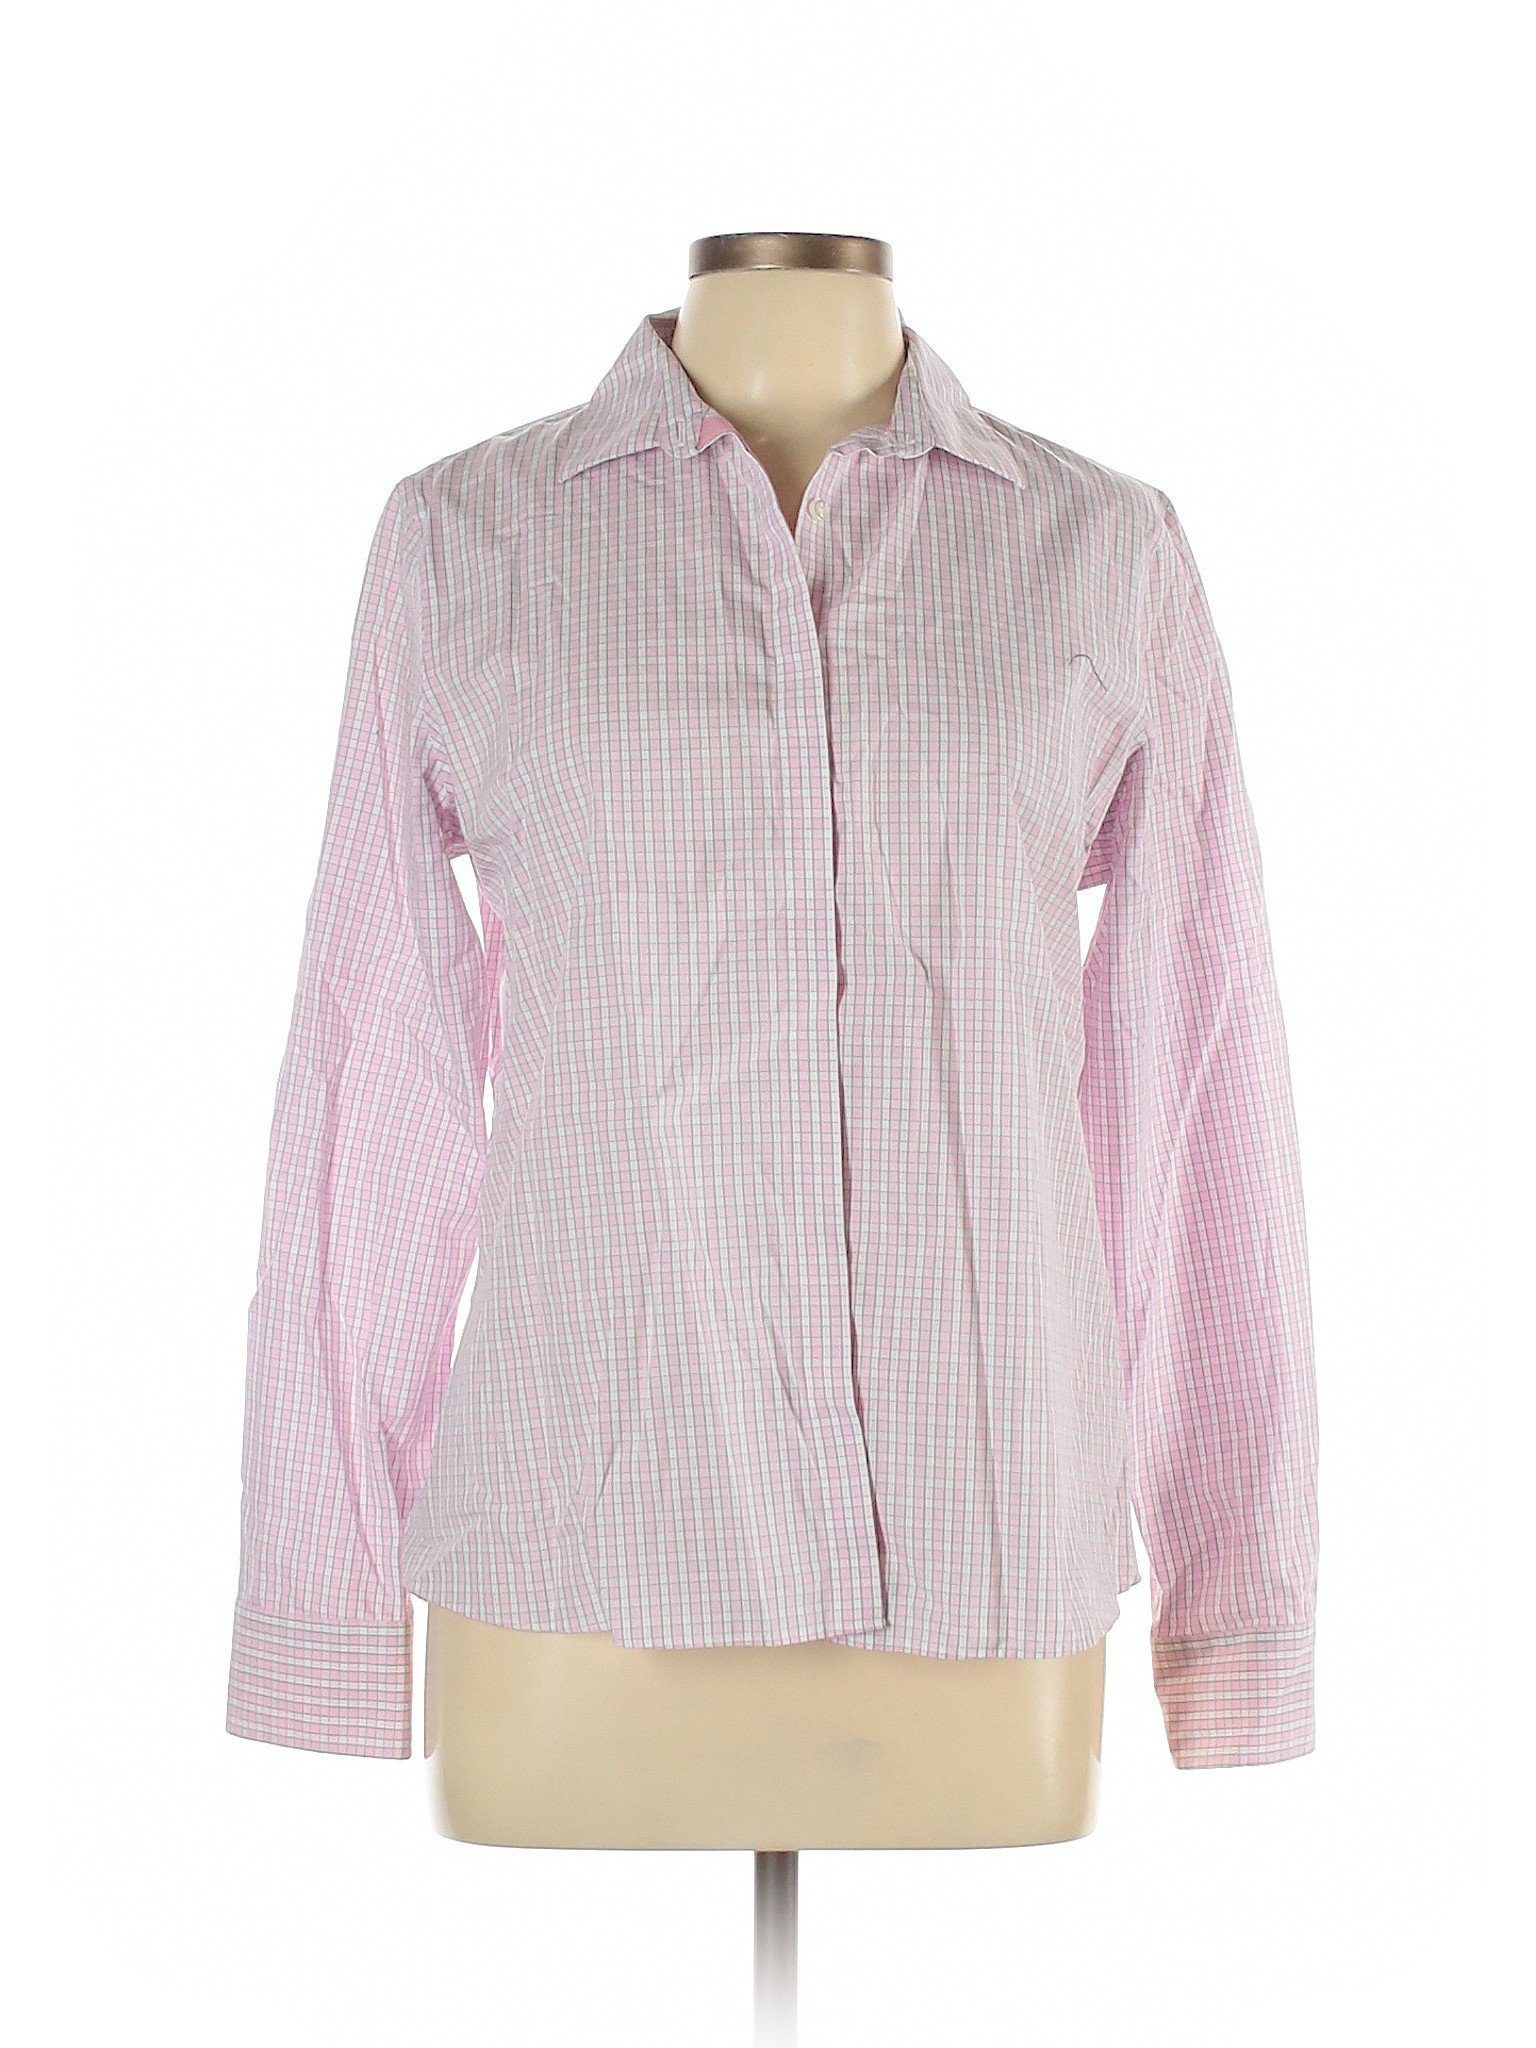 Lands' End Women Pink Long Sleeve Button-Down Shirt 12 | eBay